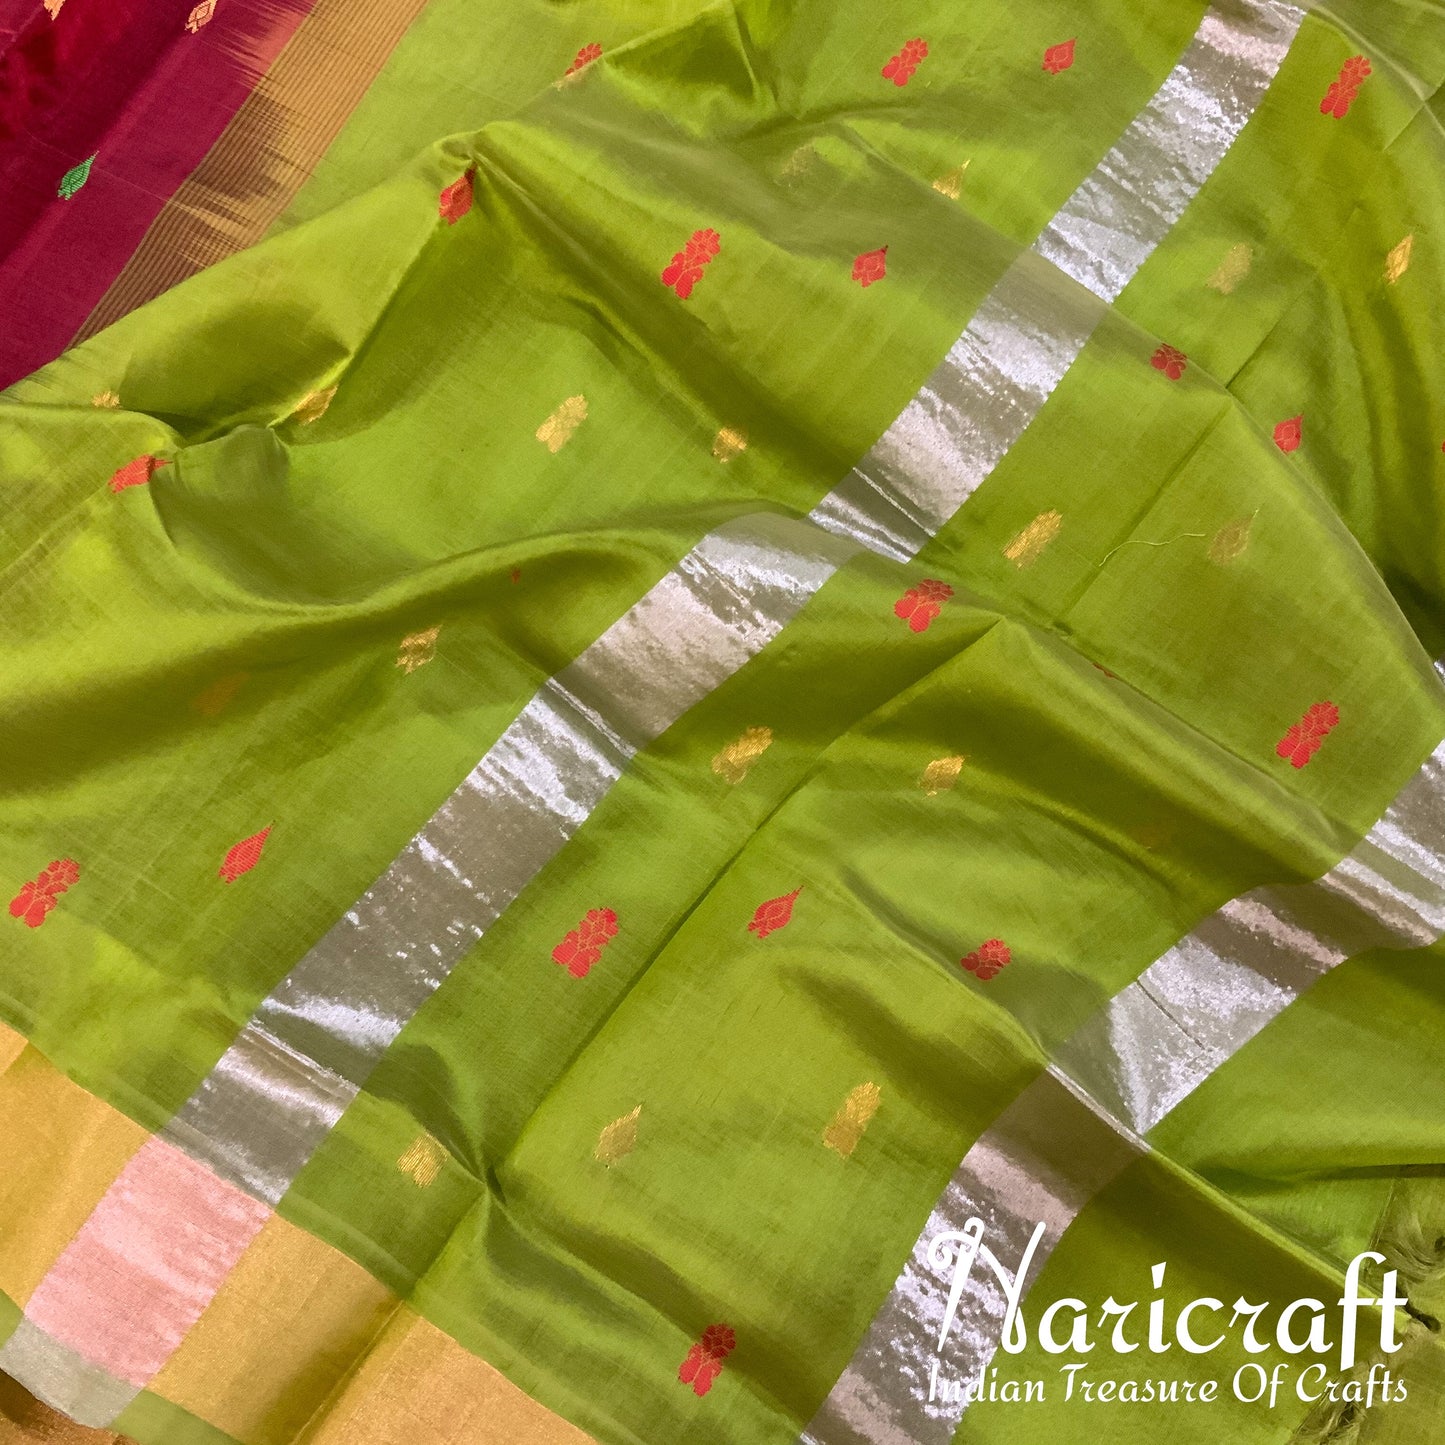 Venkatagiri silk cotton saree - Maroon